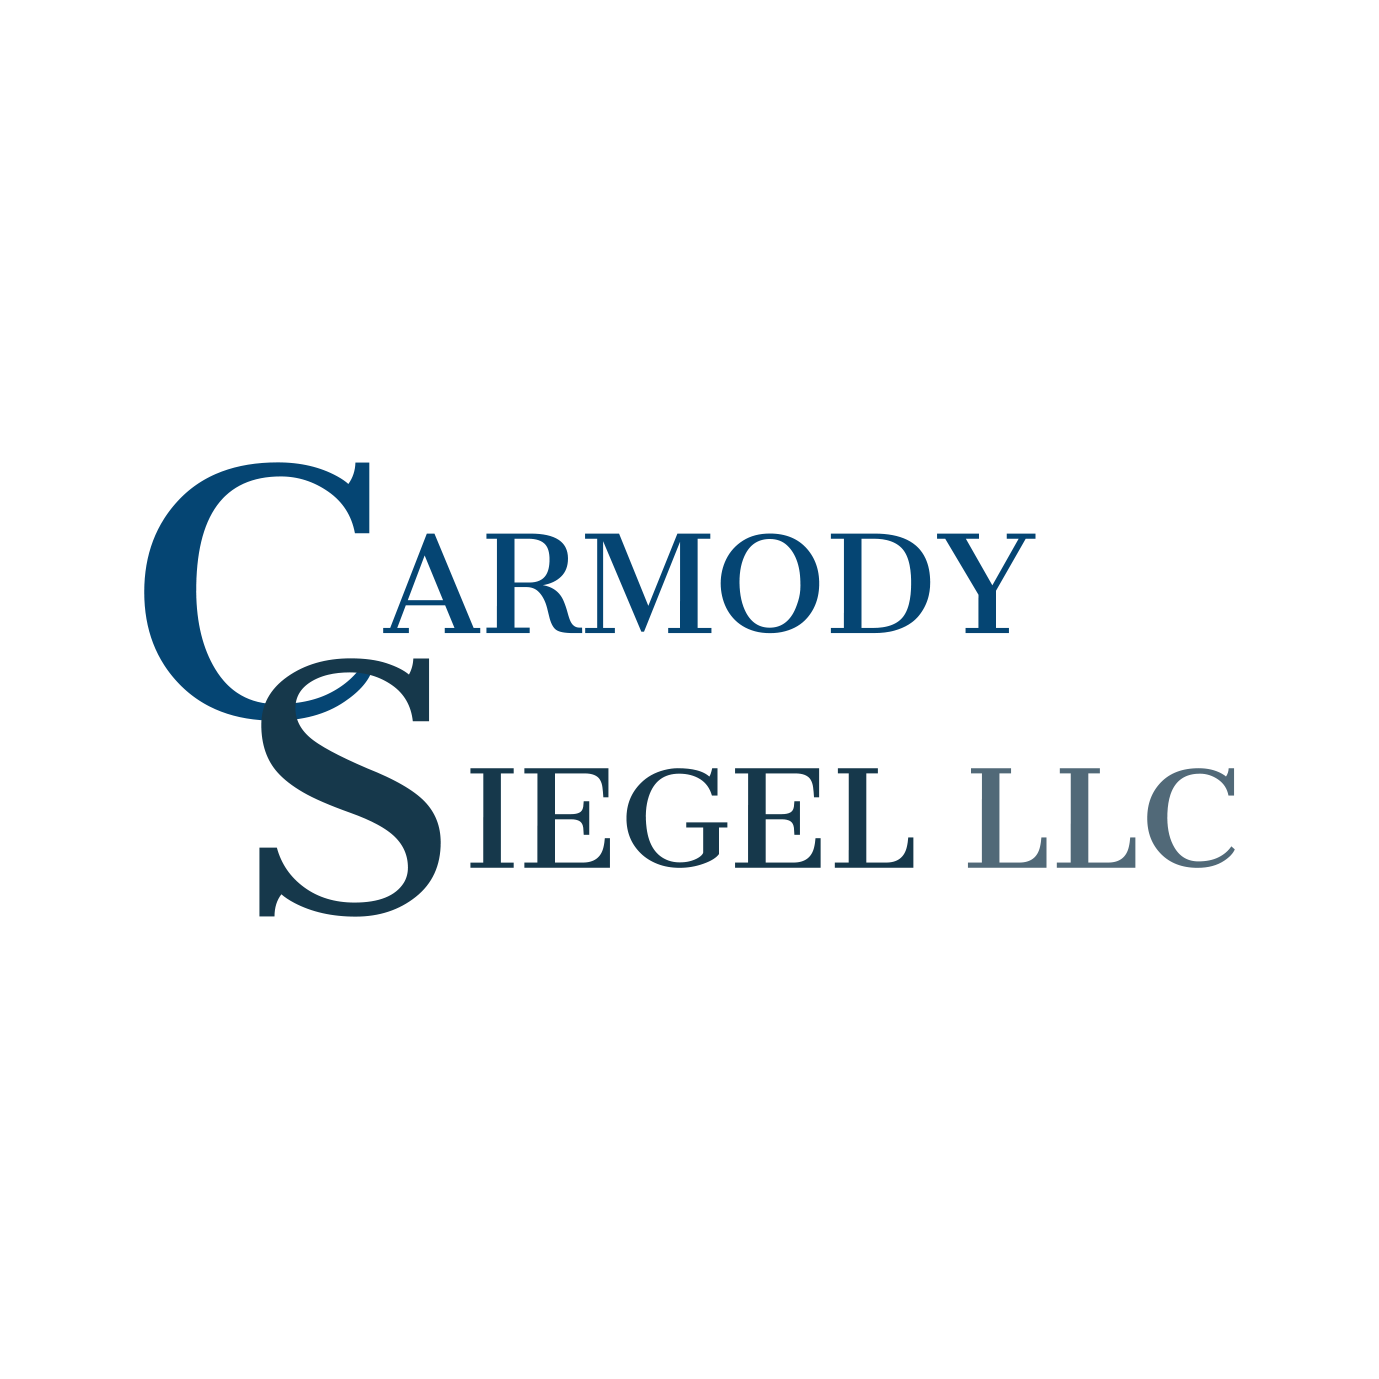 Carmody Siegel LLC